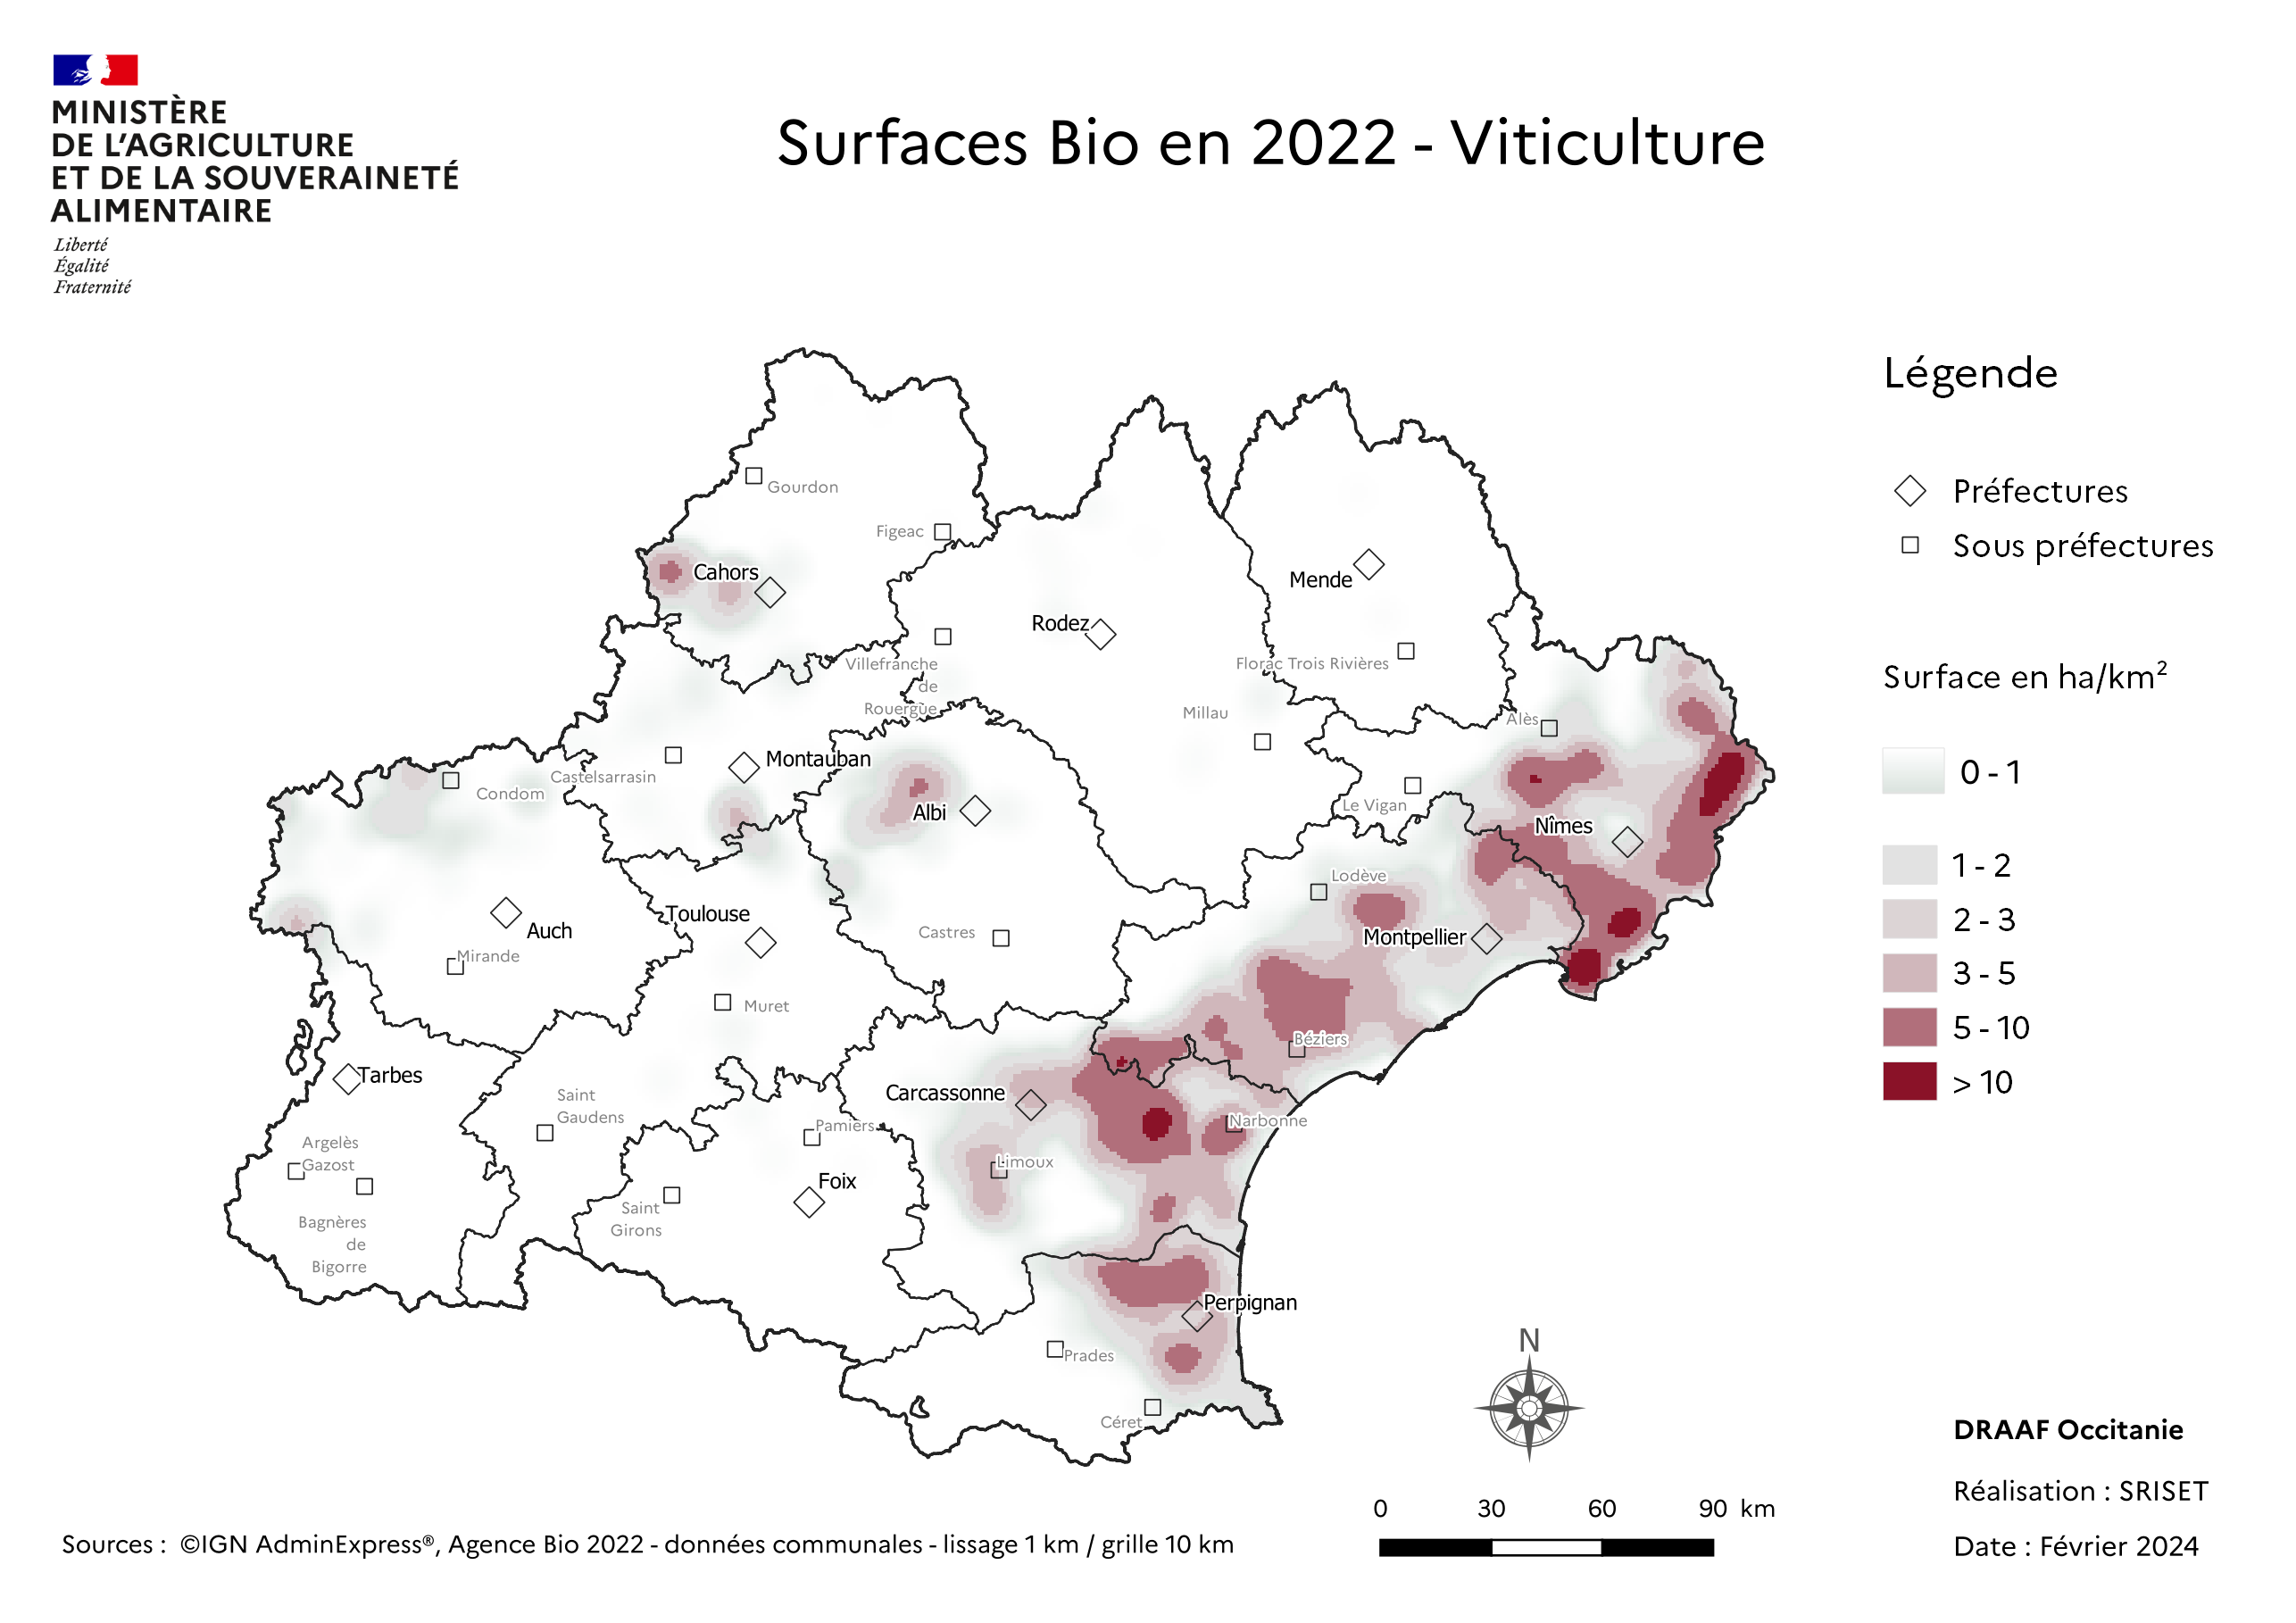 Carte des surfaces Bio en viticulture de la région Occitanie - concerne principalement l'arc méditérranéen; departement 66,11, 34, 30.